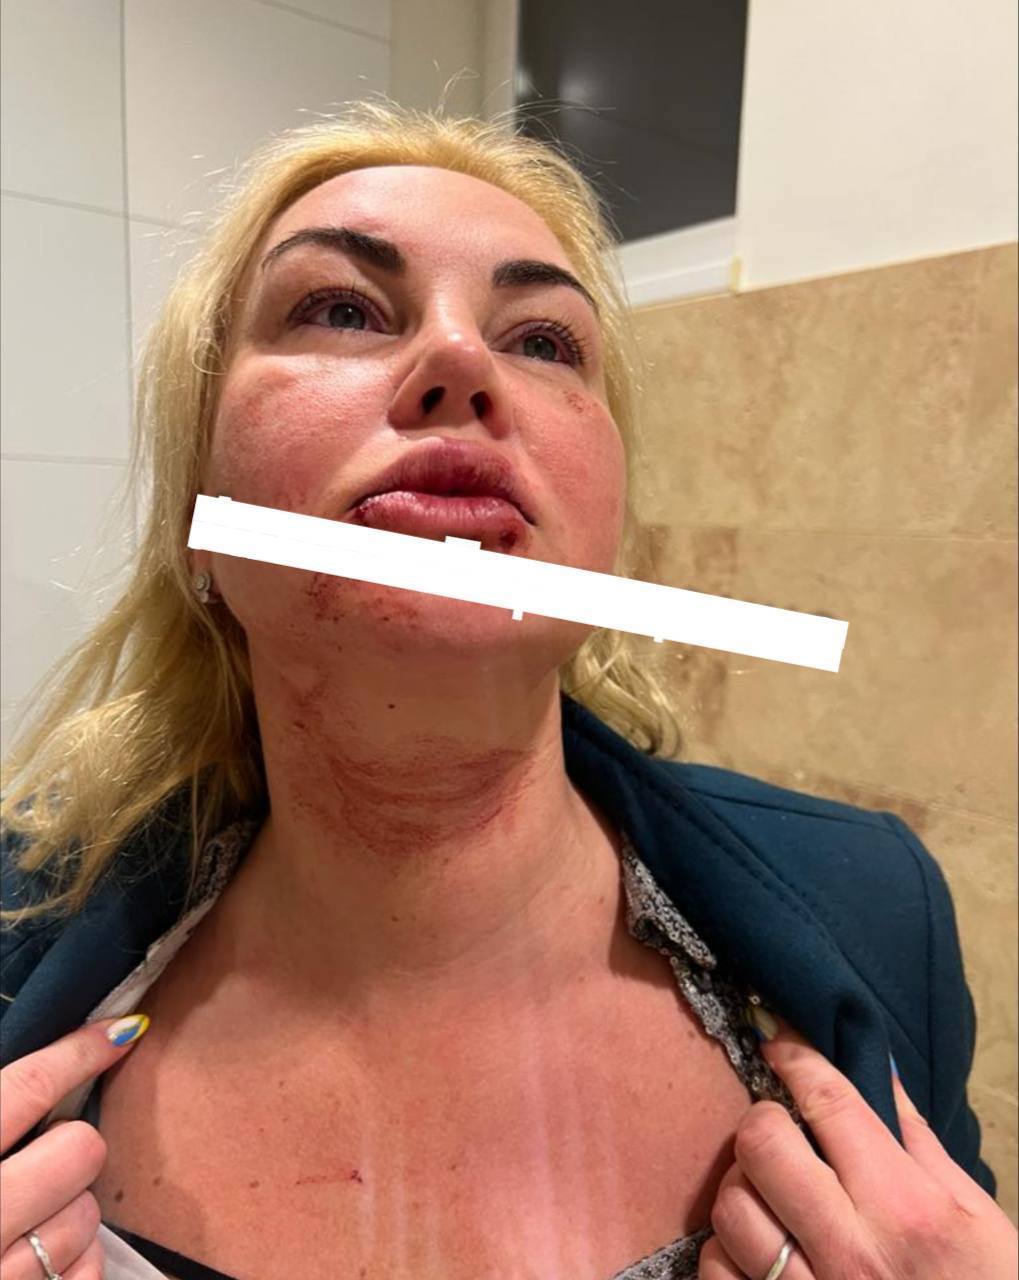 Сеть шокировали фото Камалии в синяках и крови: певица отреагировала